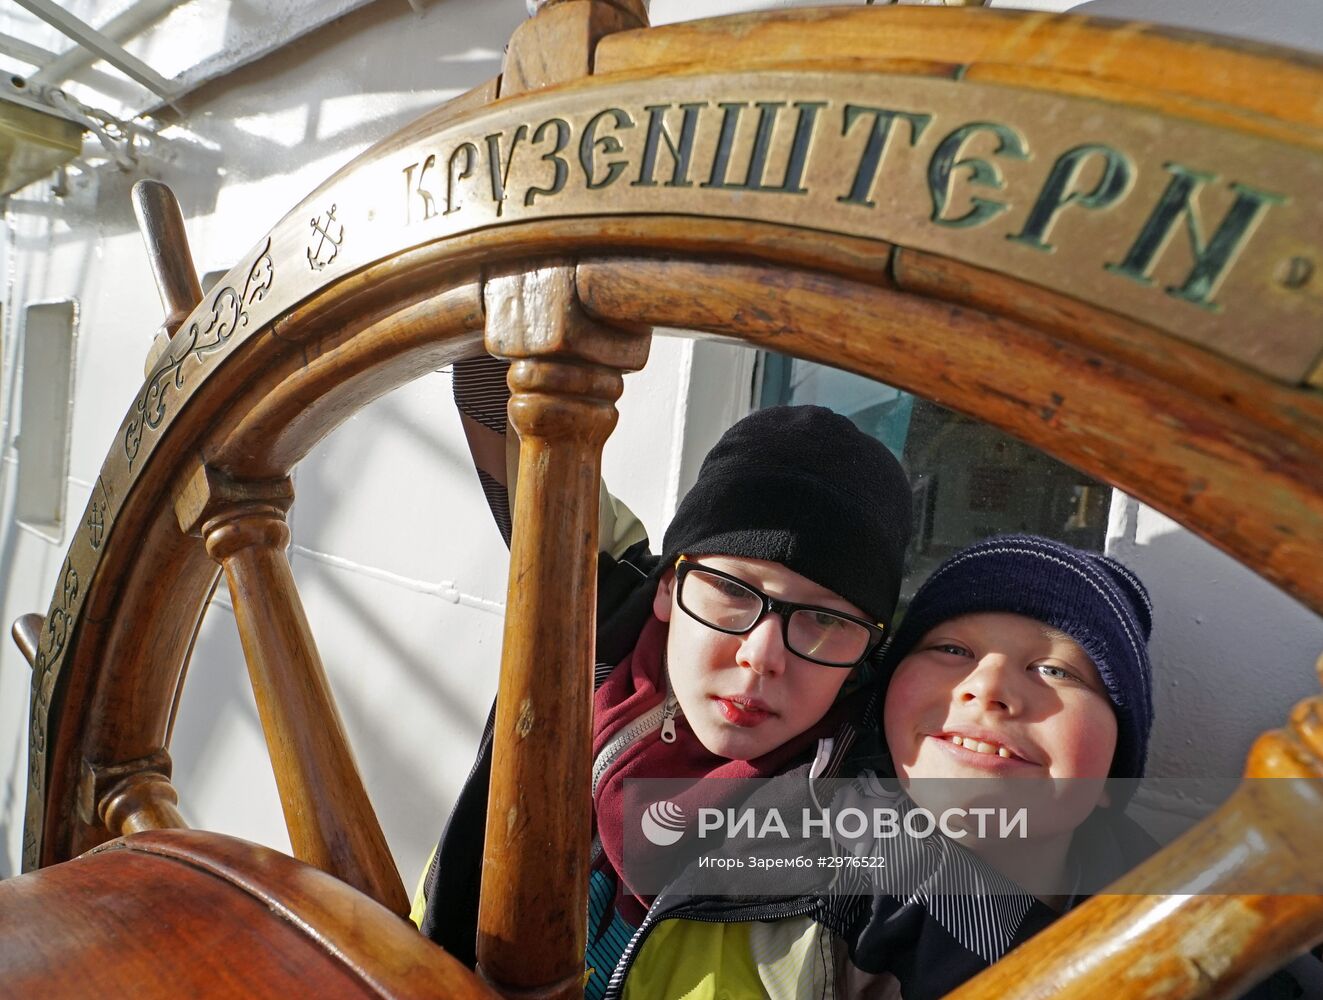 Мероприятия, посвященные 90-летию барка "Крузенштерн", в Калининграде